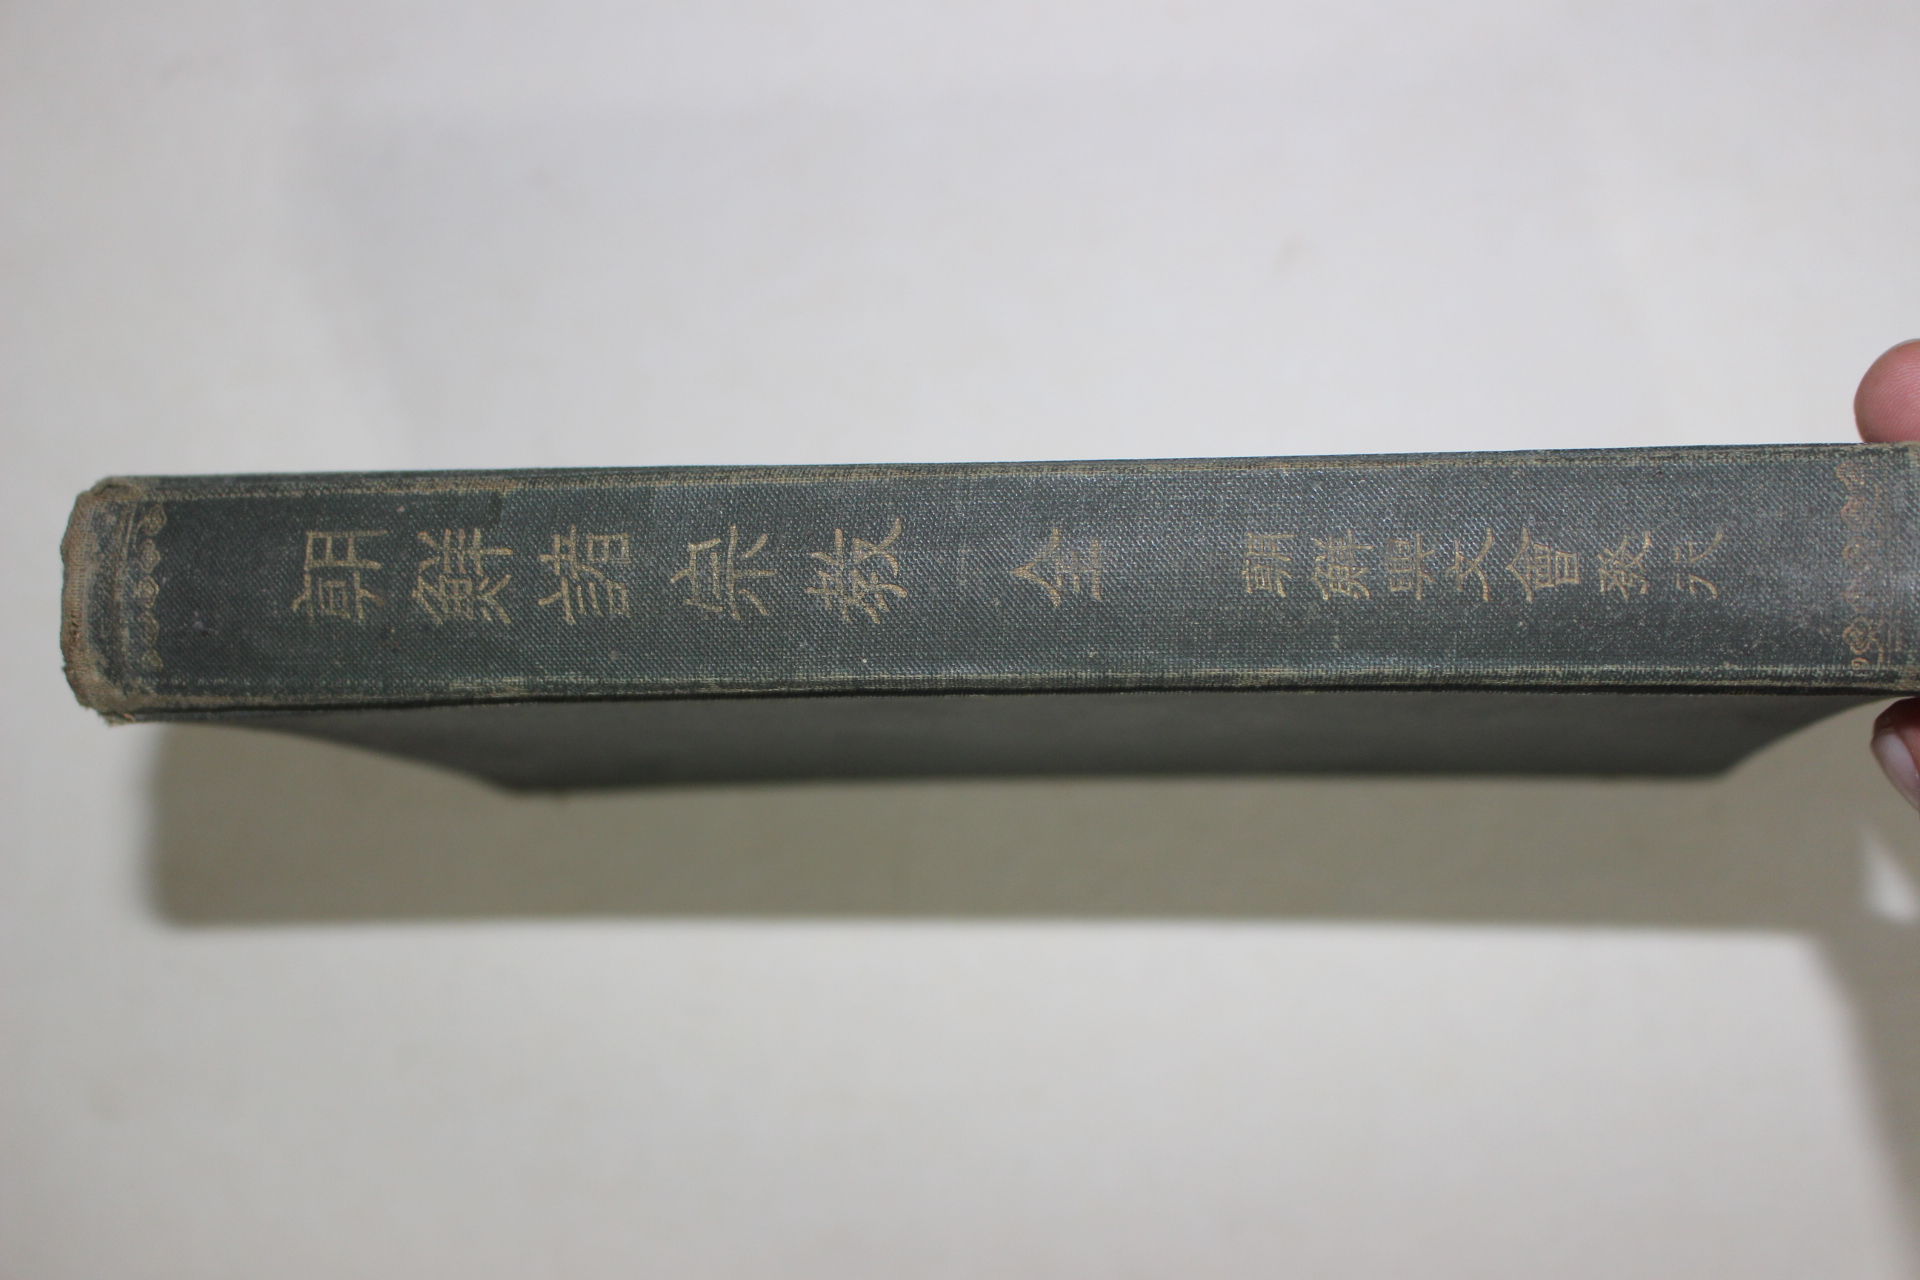 1922년(대정11년)초판 경성간행 조선제종교(朝鮮諸宗敎) 1책완질